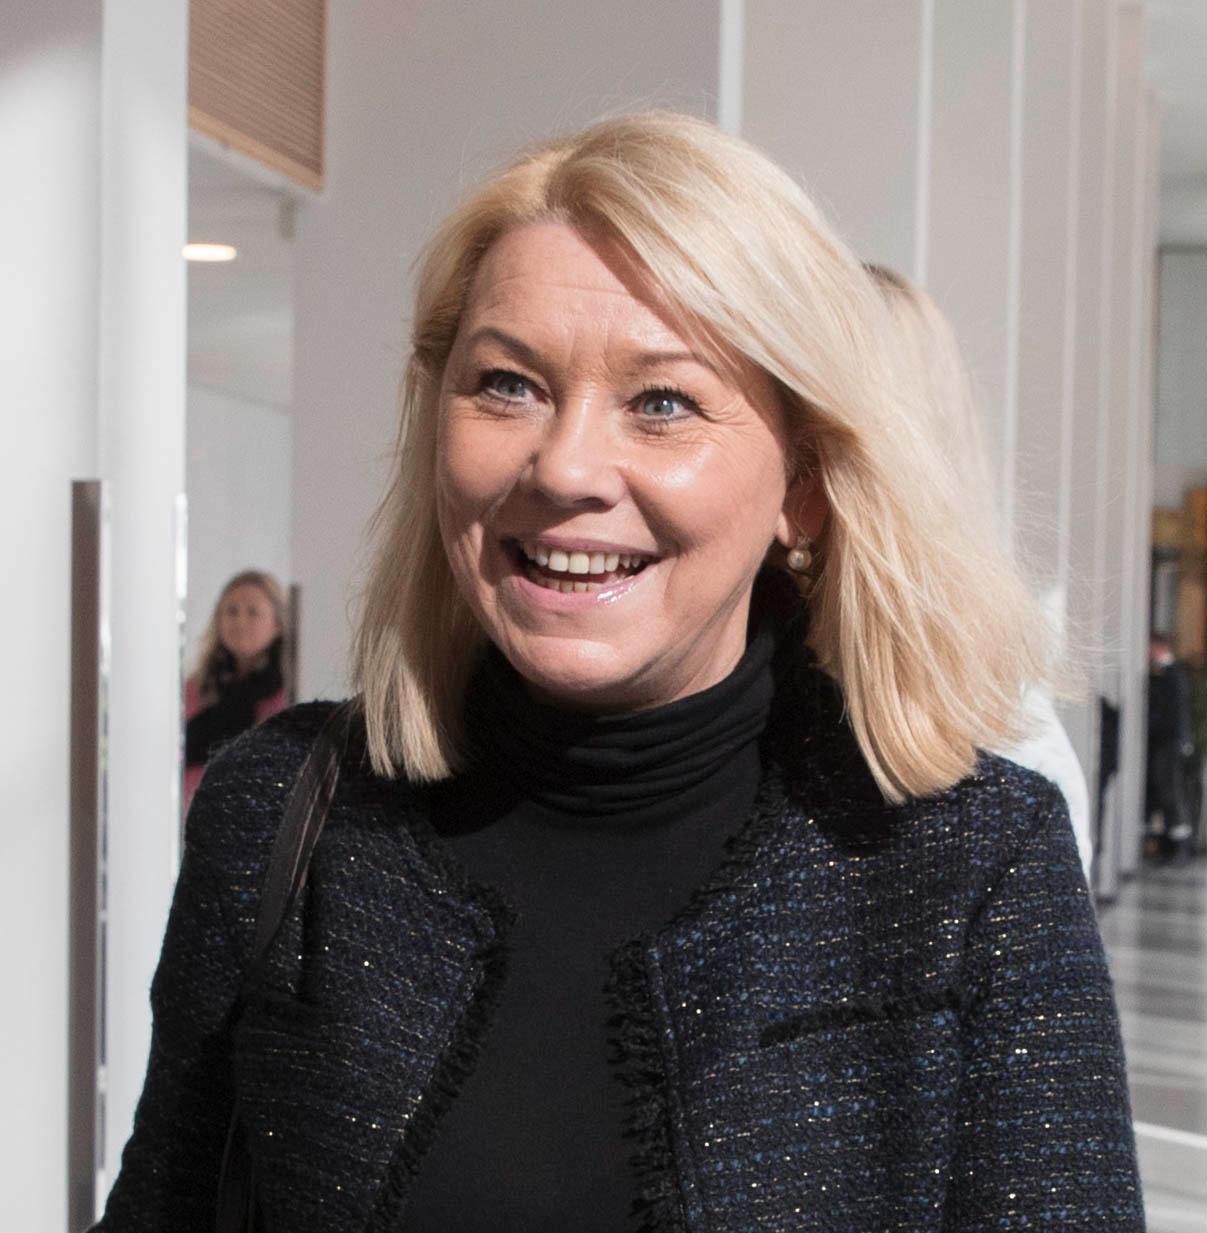 NAVNESJEF: Kommunalminister Monica Mæland foreslår at det nye fylket skal hete «Vestland». Navnet blir etter alt å dømme vedtatt av Stortinget før sommeren.